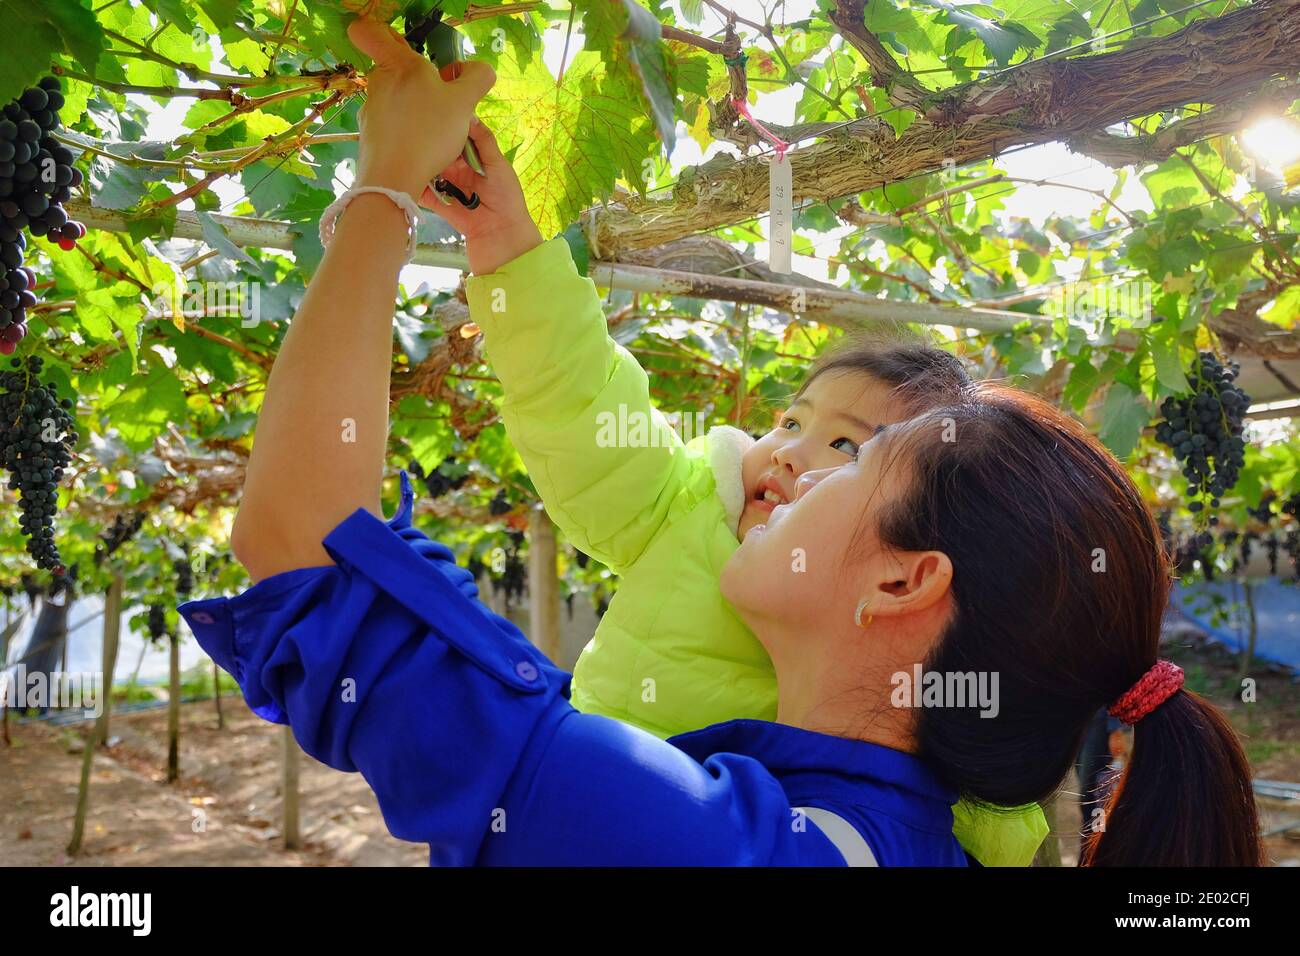 Une jolie fille asiatique et sa mère cueillant des raisins rouges doux frais mûrs à partir de vignes en utilisant des ciseaux, se sentant heureux et excité, sourire, activité amusante. Banque D'Images